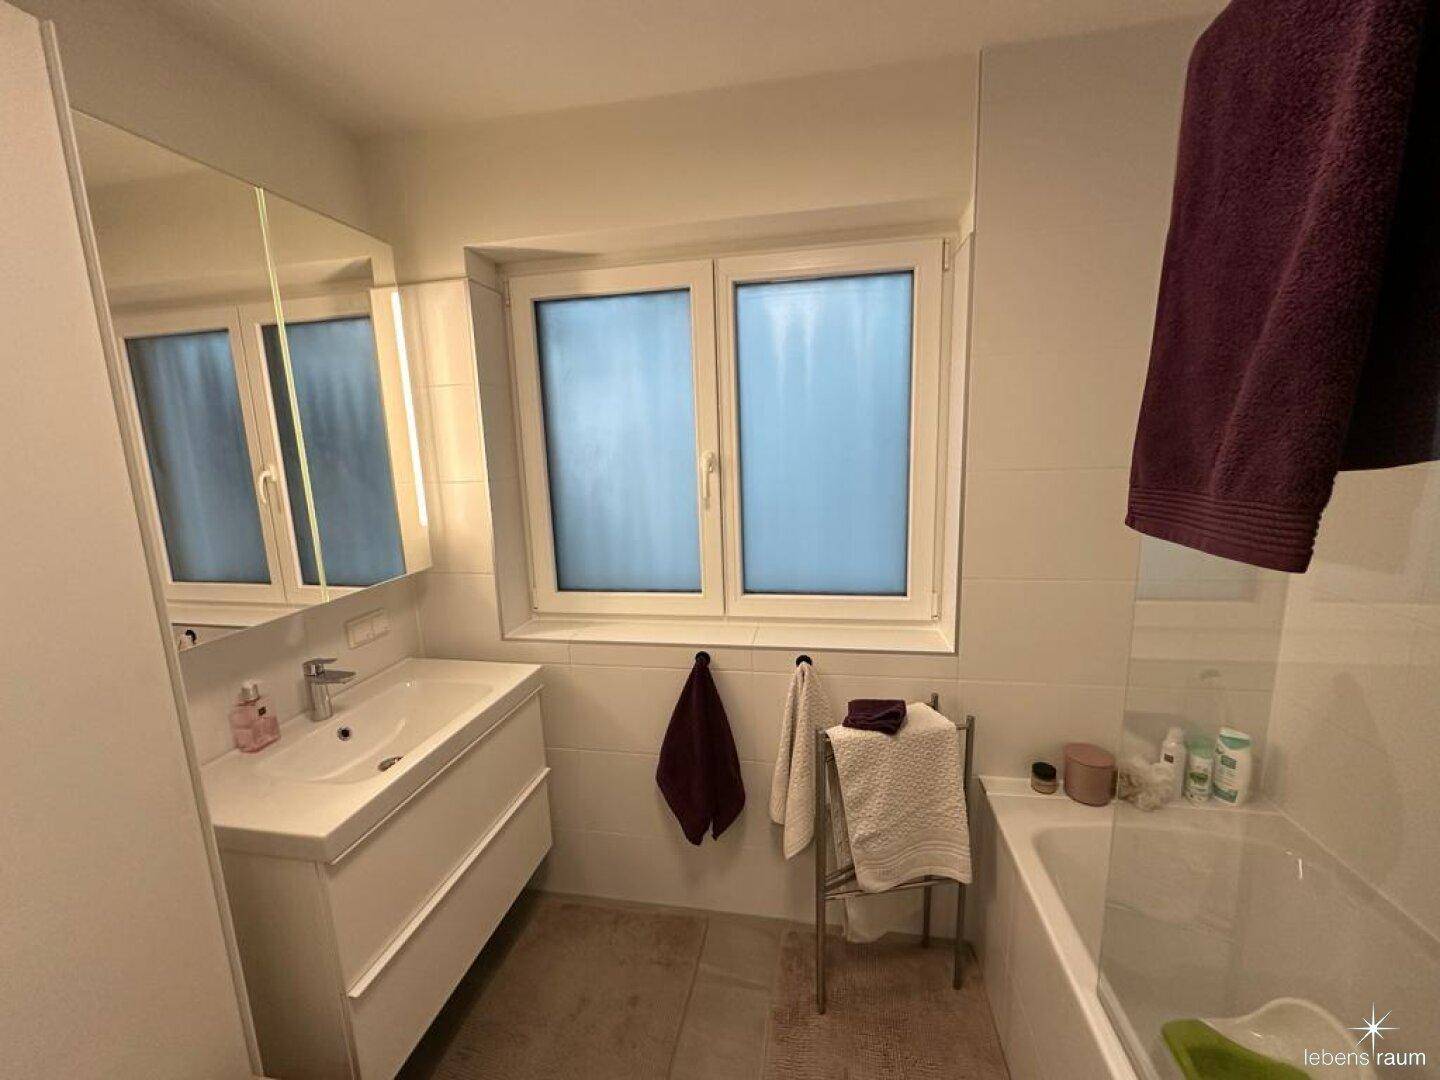 Badezimmer mit Fenster